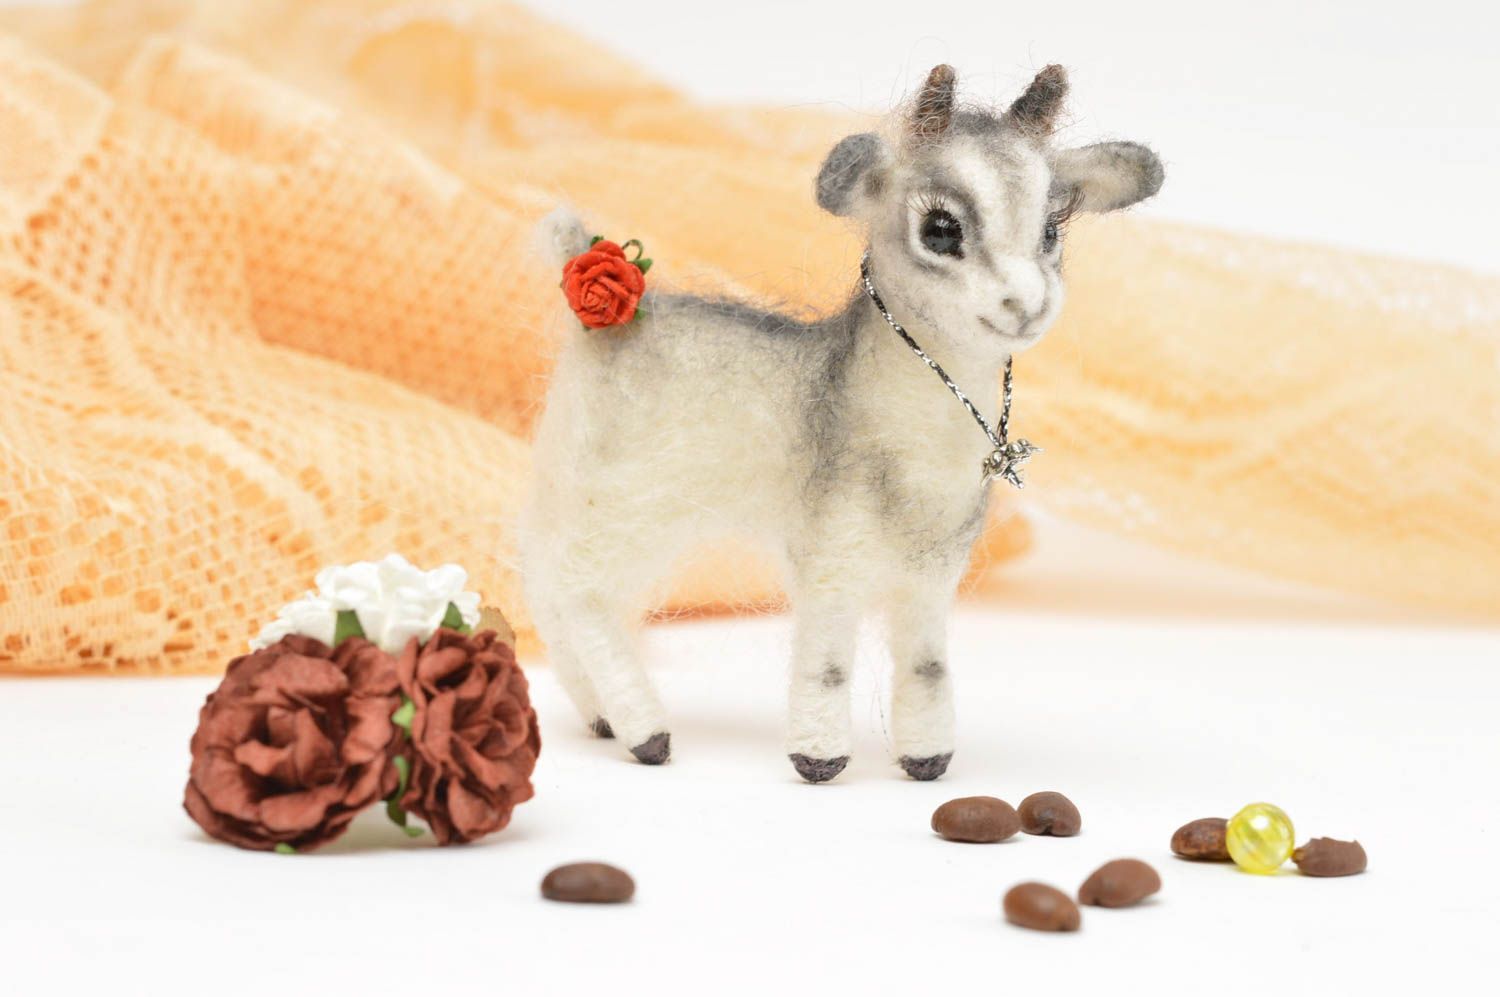 Handmade Plüsch Ziege Stoff Kuscheltier Geschenk für Kinder hübsch lustig foto 1